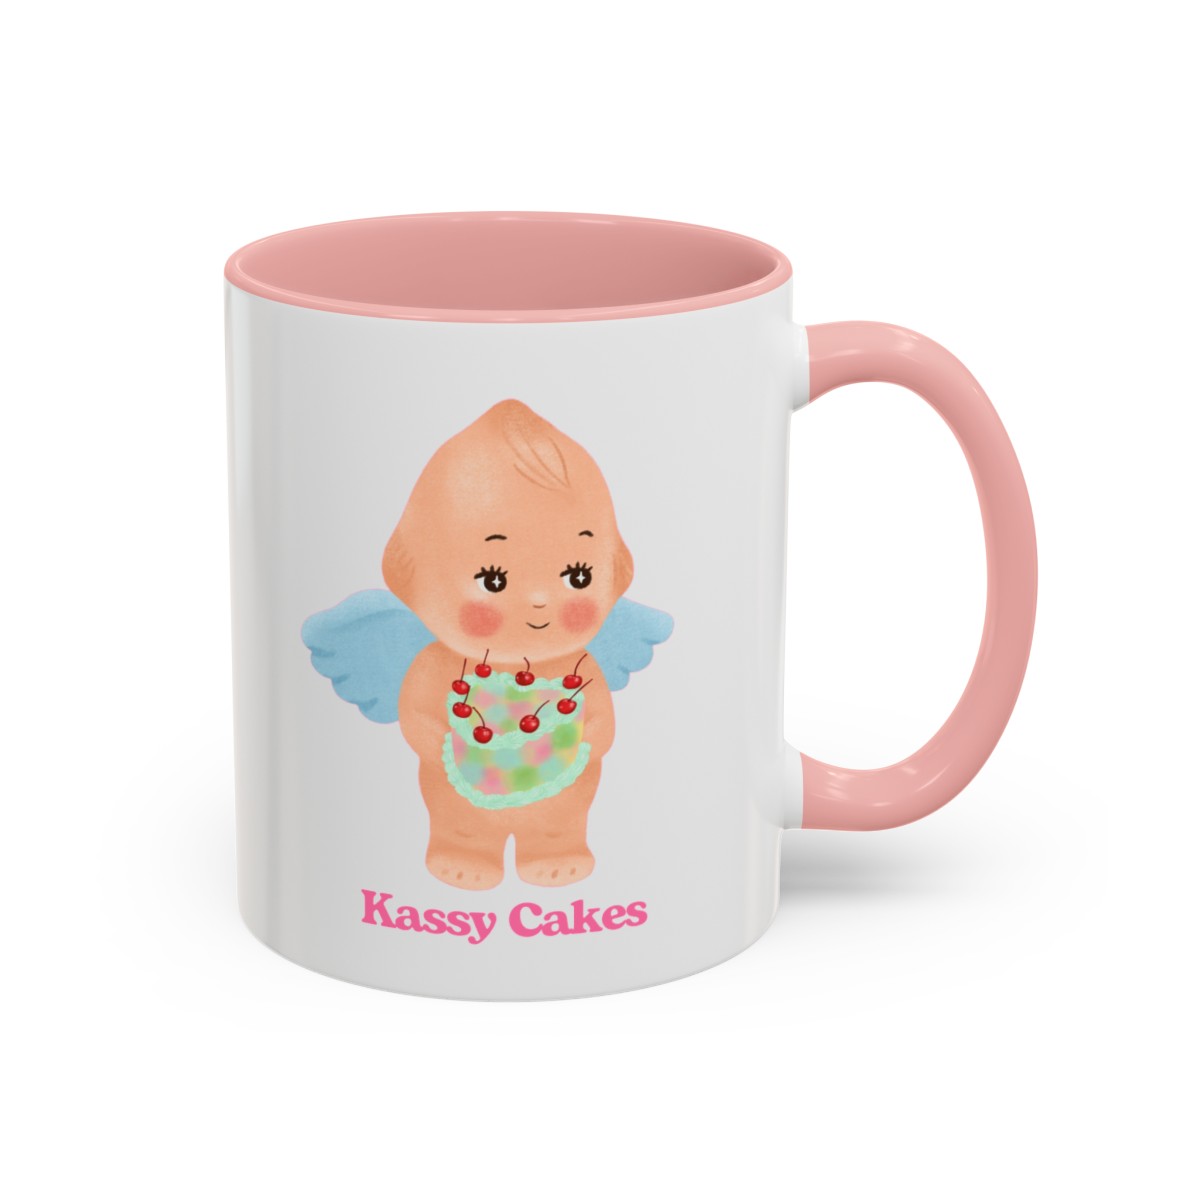 Kassy Cakes Coffee Mug, 11oz product main image